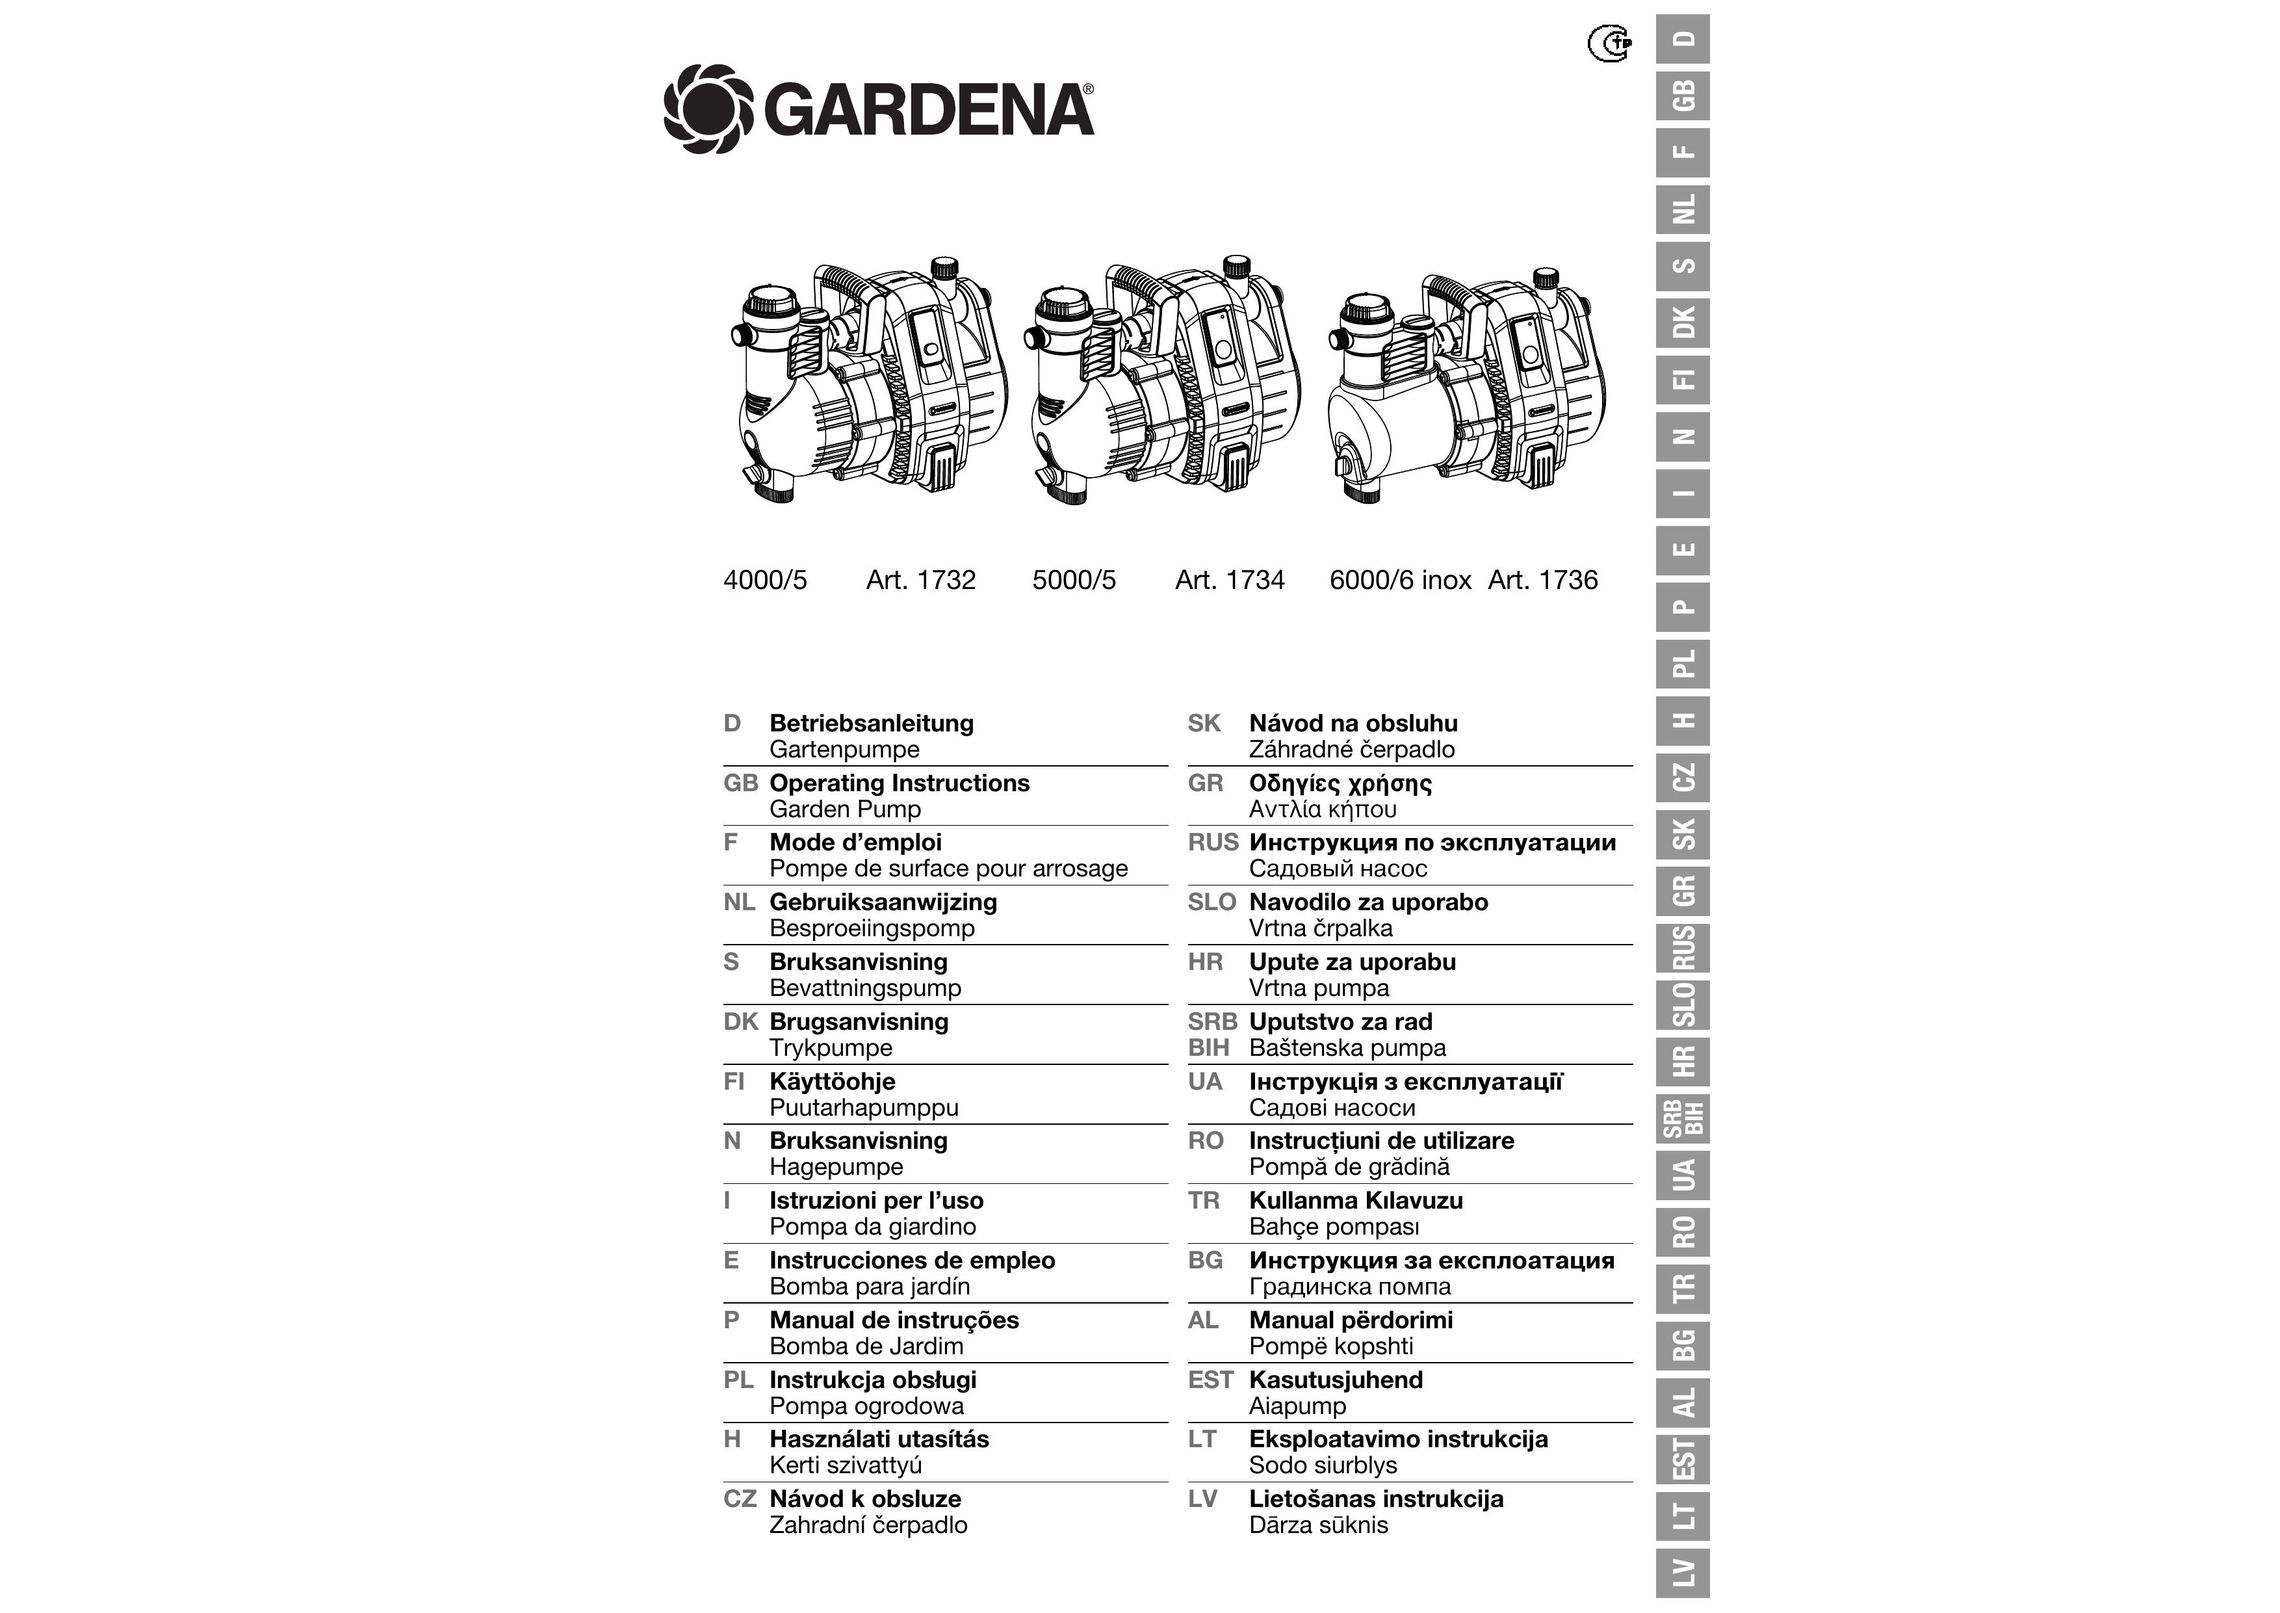 Gardena 5000/5 Water Pump User Manual